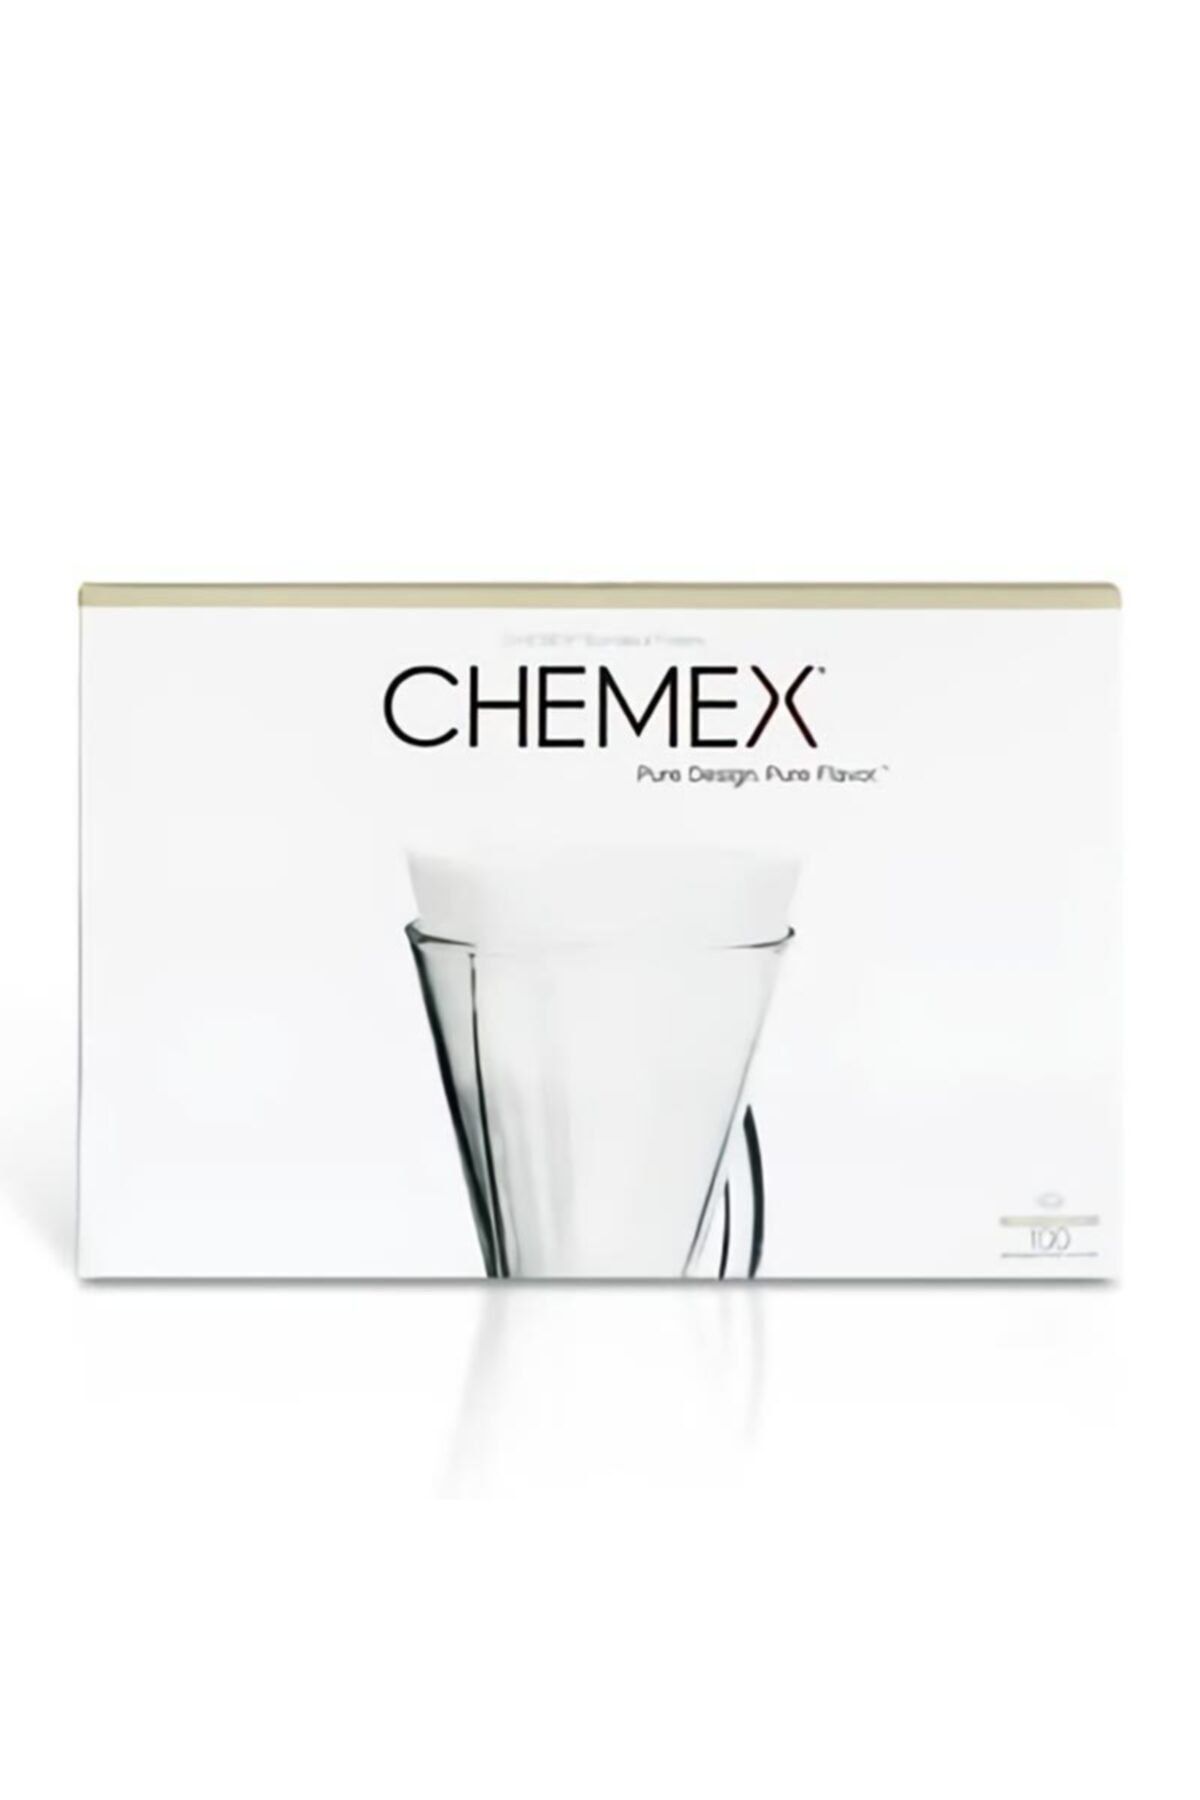 Chemex Filtre Kağıdı, 3 Cup Model Için, 100 Adet